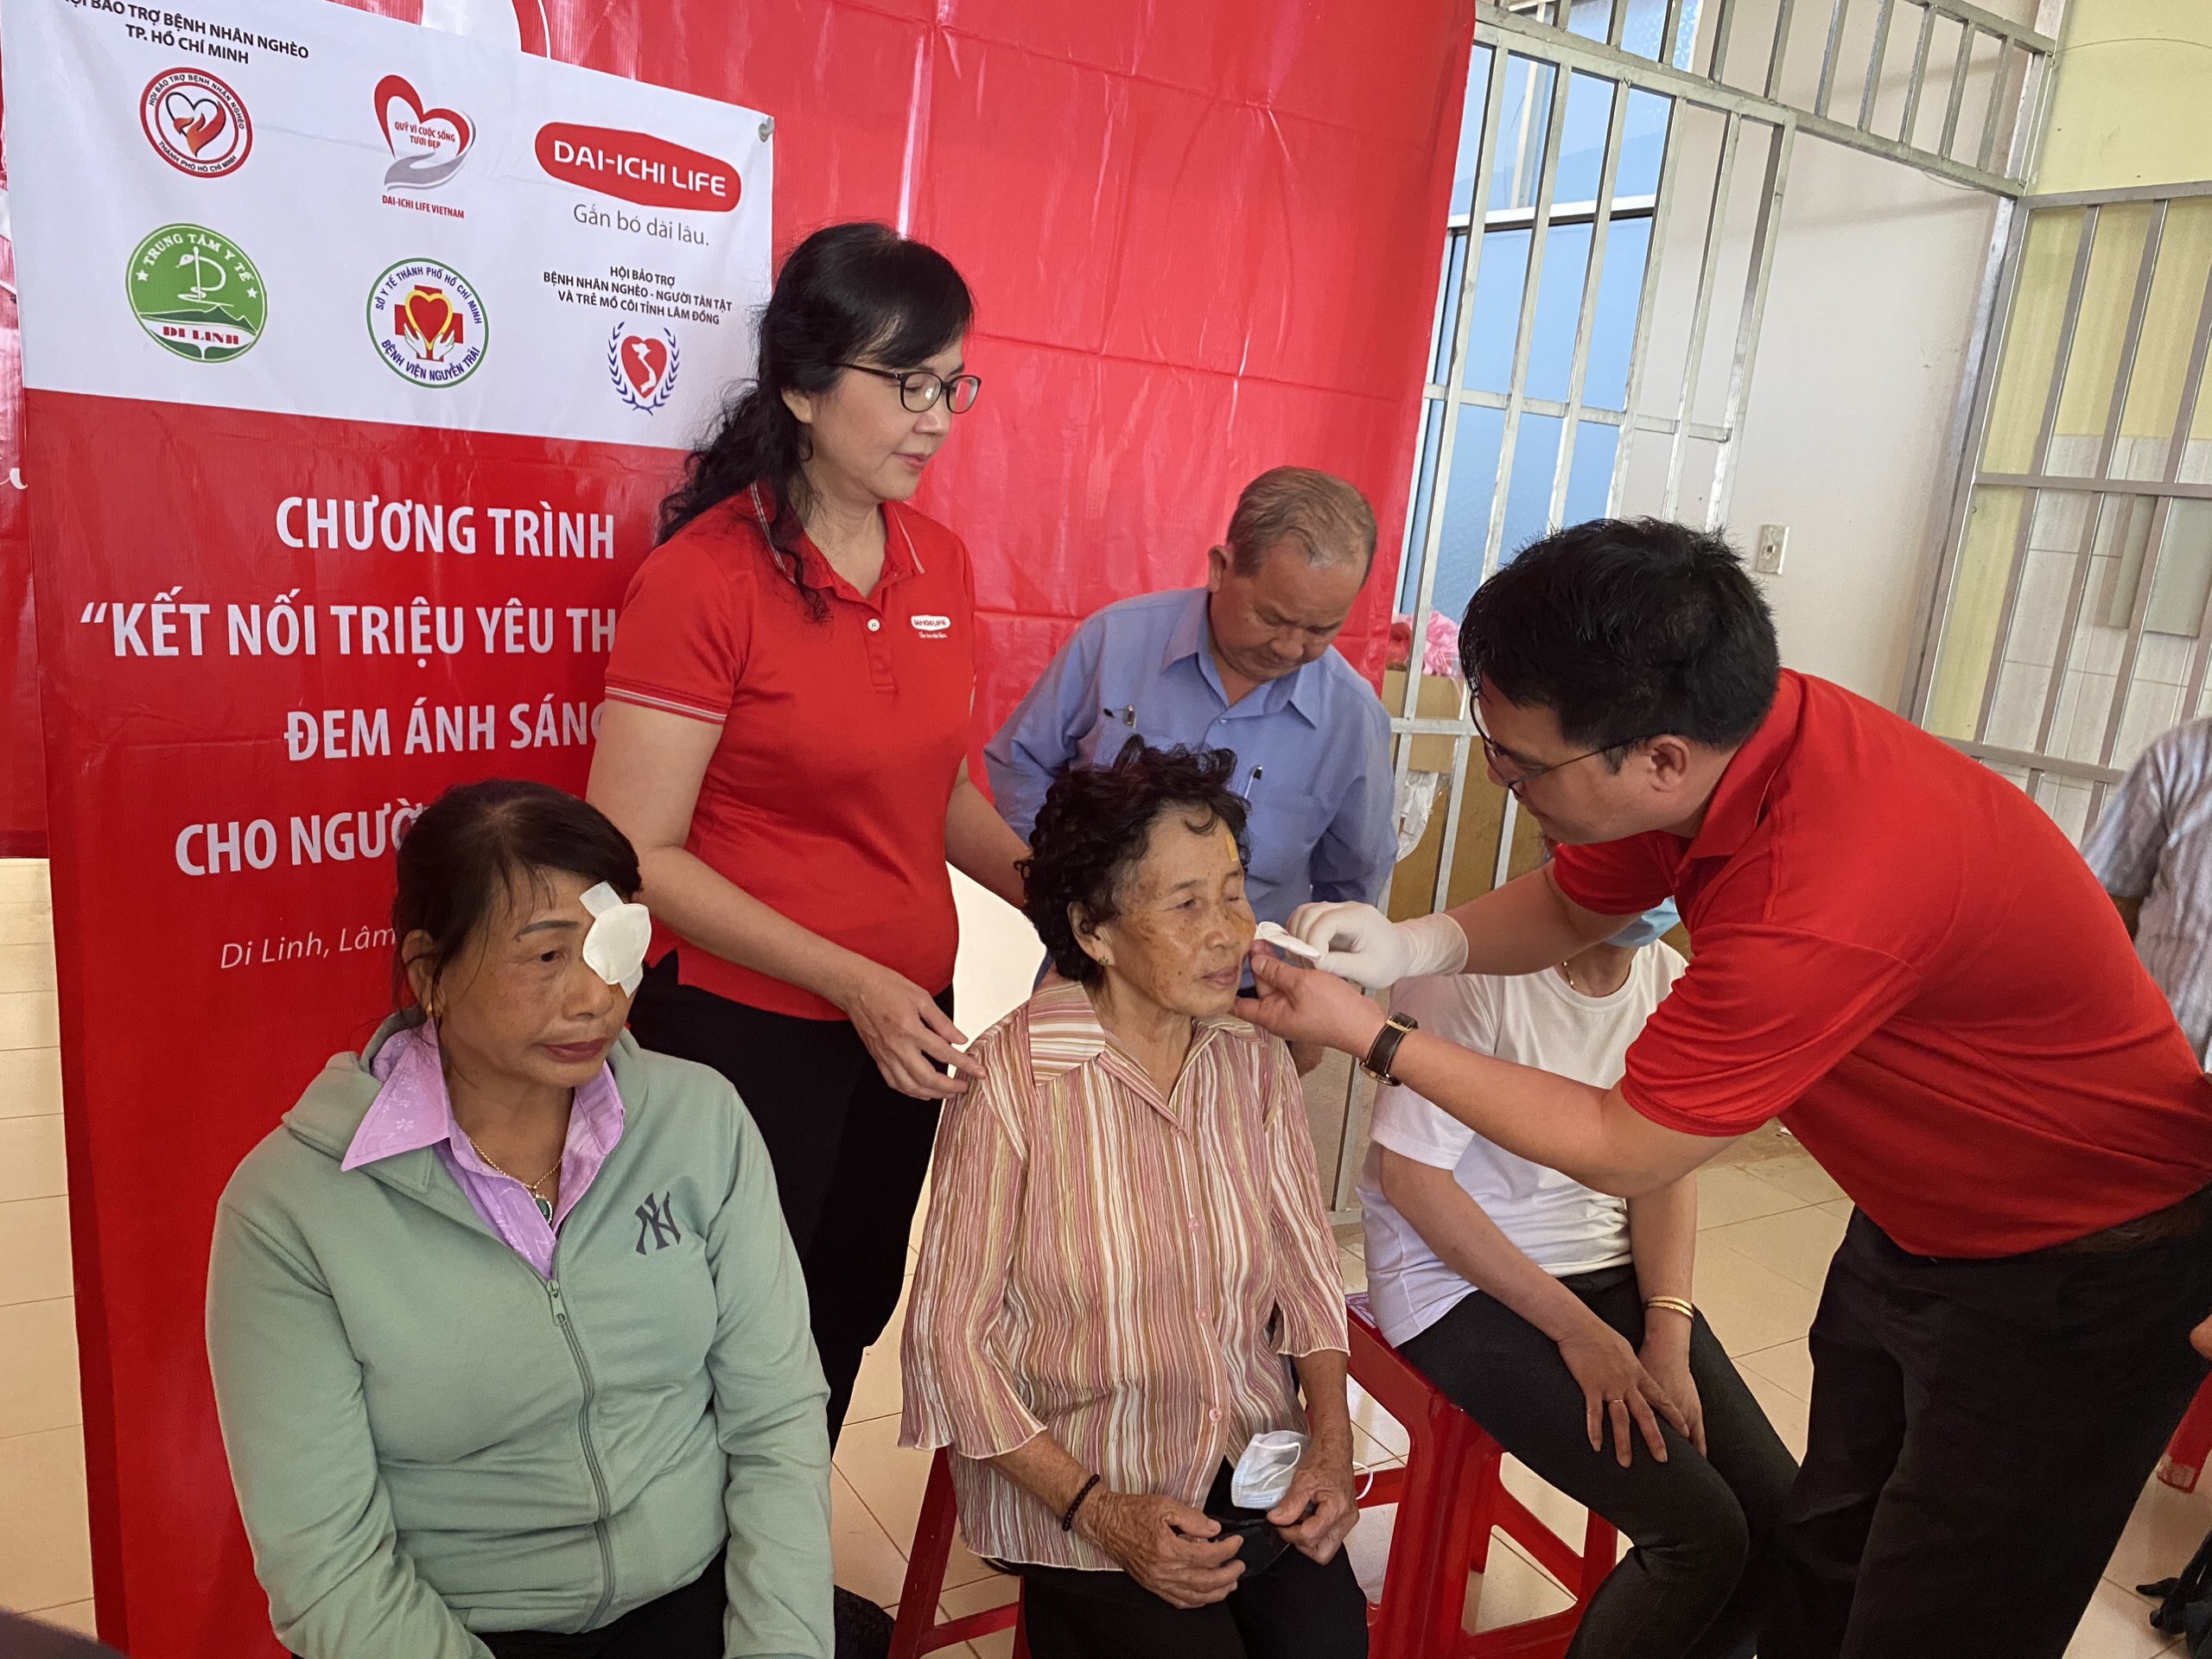 Dai-ichi Life Việt Nam tiếp tục triển khai trương trình “Đem ánh sáng cho người nghèo” lần thứ 13